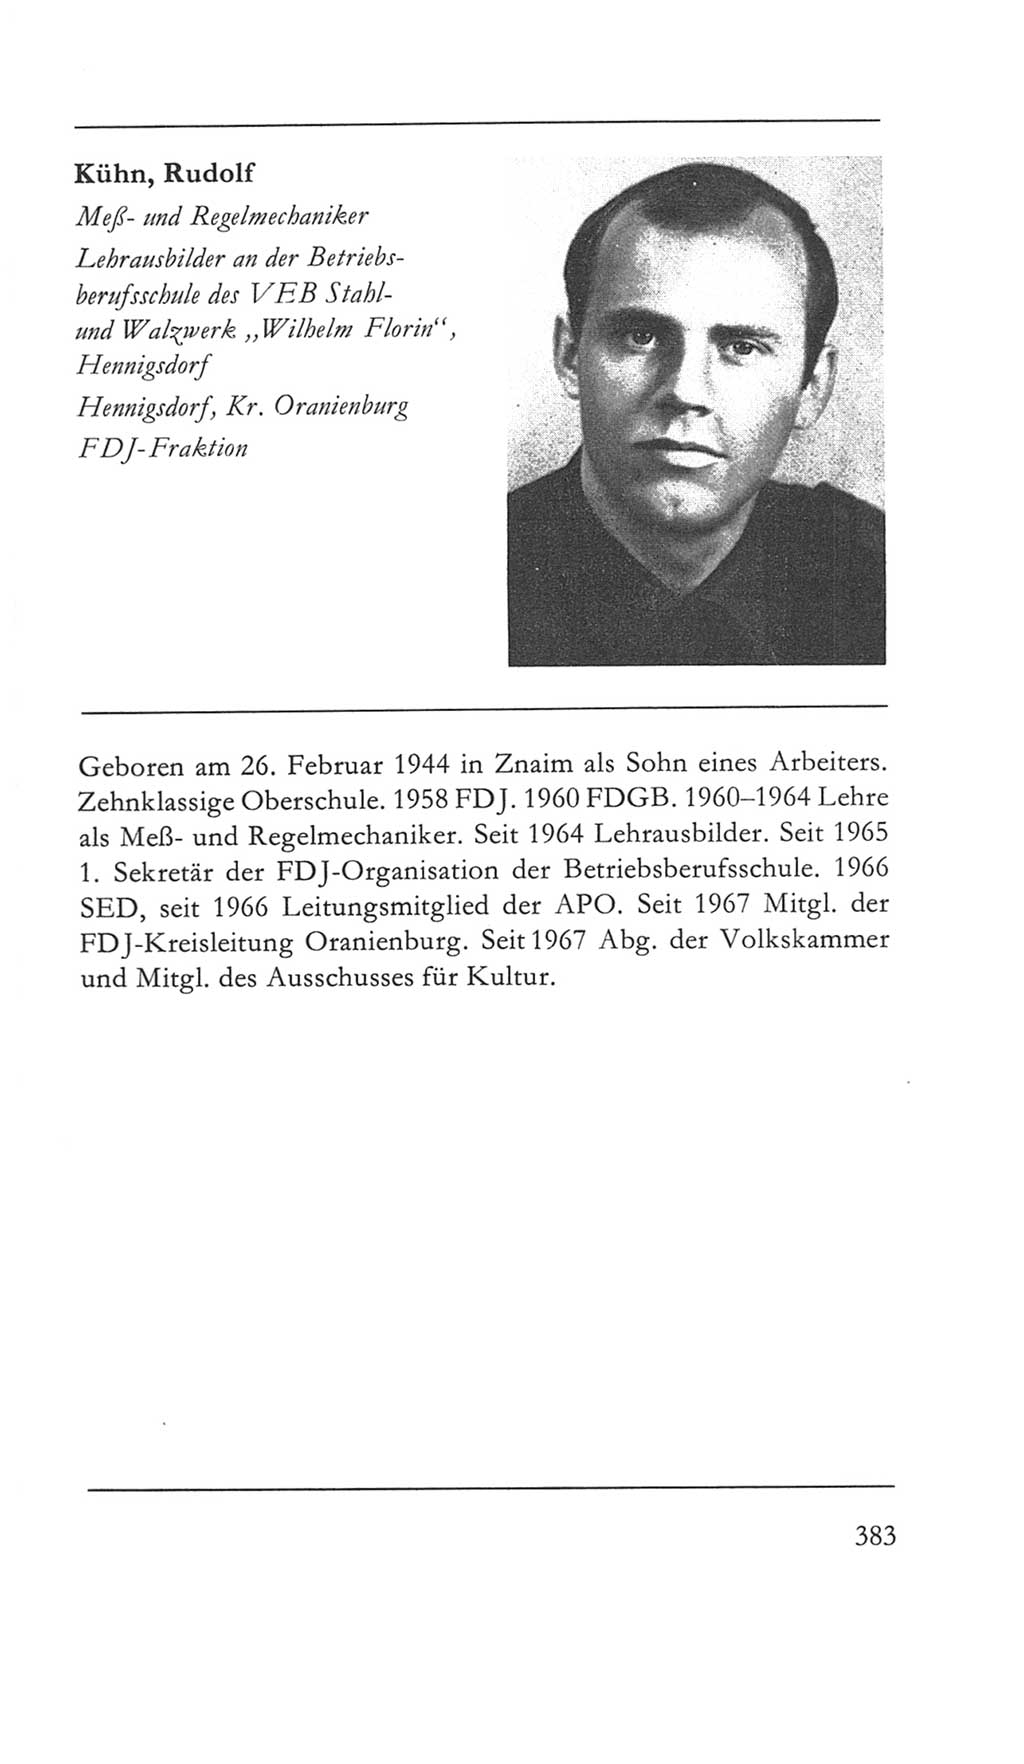 Volkskammer (VK) der Deutschen Demokratischen Republik (DDR) 5. Wahlperiode 1967-1971, Seite 383 (VK. DDR 5. WP. 1967-1971, S. 383)